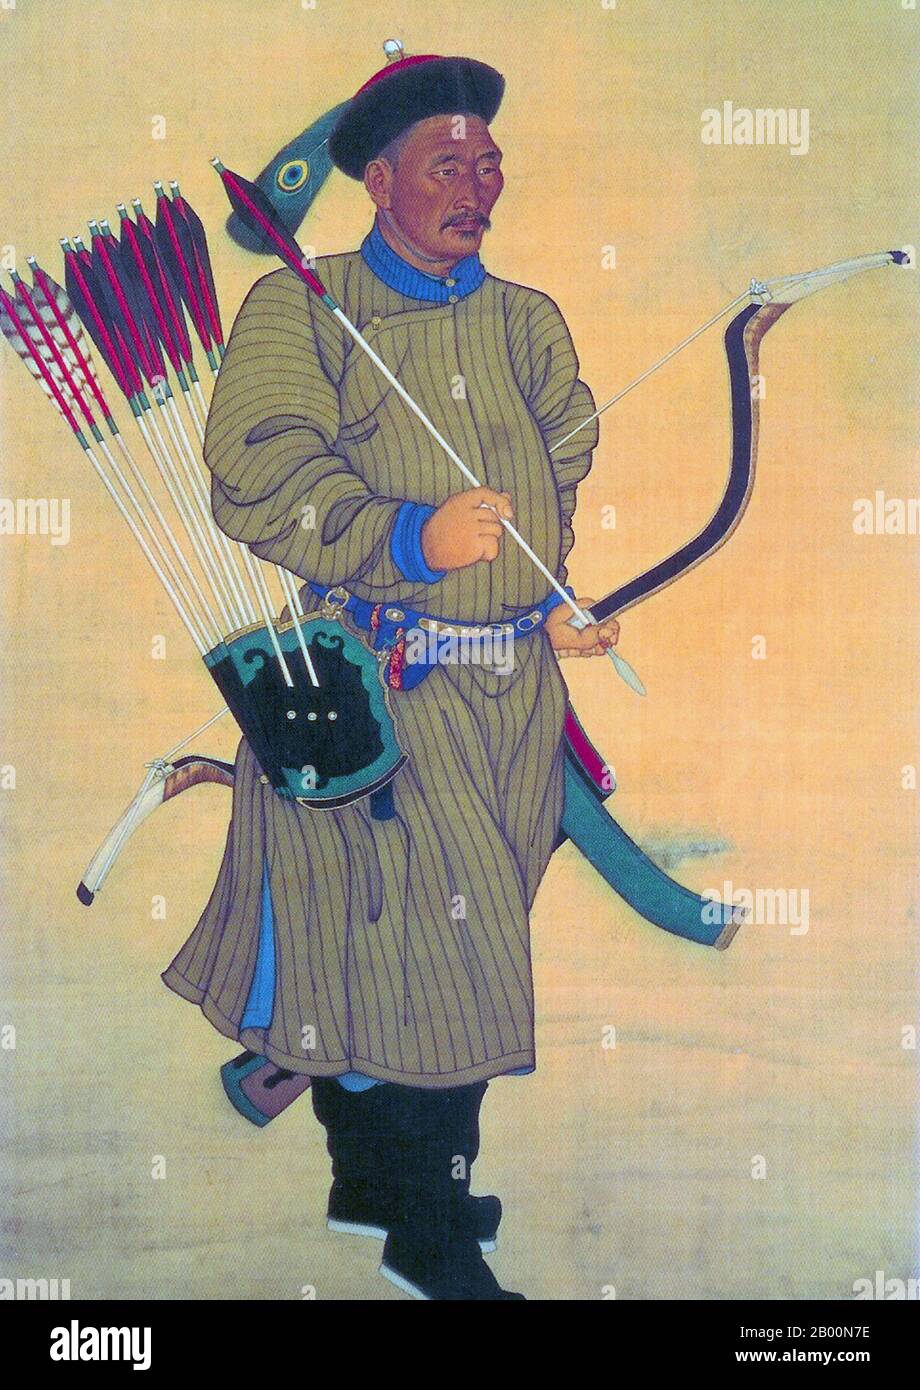 Cina: Pittura di corte di un Manchu Bannerman della dinastia Qing con prua, frecce e fremito, metà del 18 ° secolo. Da quando la Cina fu portata sotto il dominio della dinastia Qing (1644 – 1683), i soldati della bandiera divennero più professionali e burocratizzati. Una volta che i Manchus presero il governo, non potevano più soddisfare i bisogni materiali dei soldati garnizzando e distribuendo il bottino; invece, fu istituito un sistema salariale, si classificarono, e i Bannermen divennero una sorta di casta militare ereditaria, anche se con una forte inflessione etnica. Foto Stock